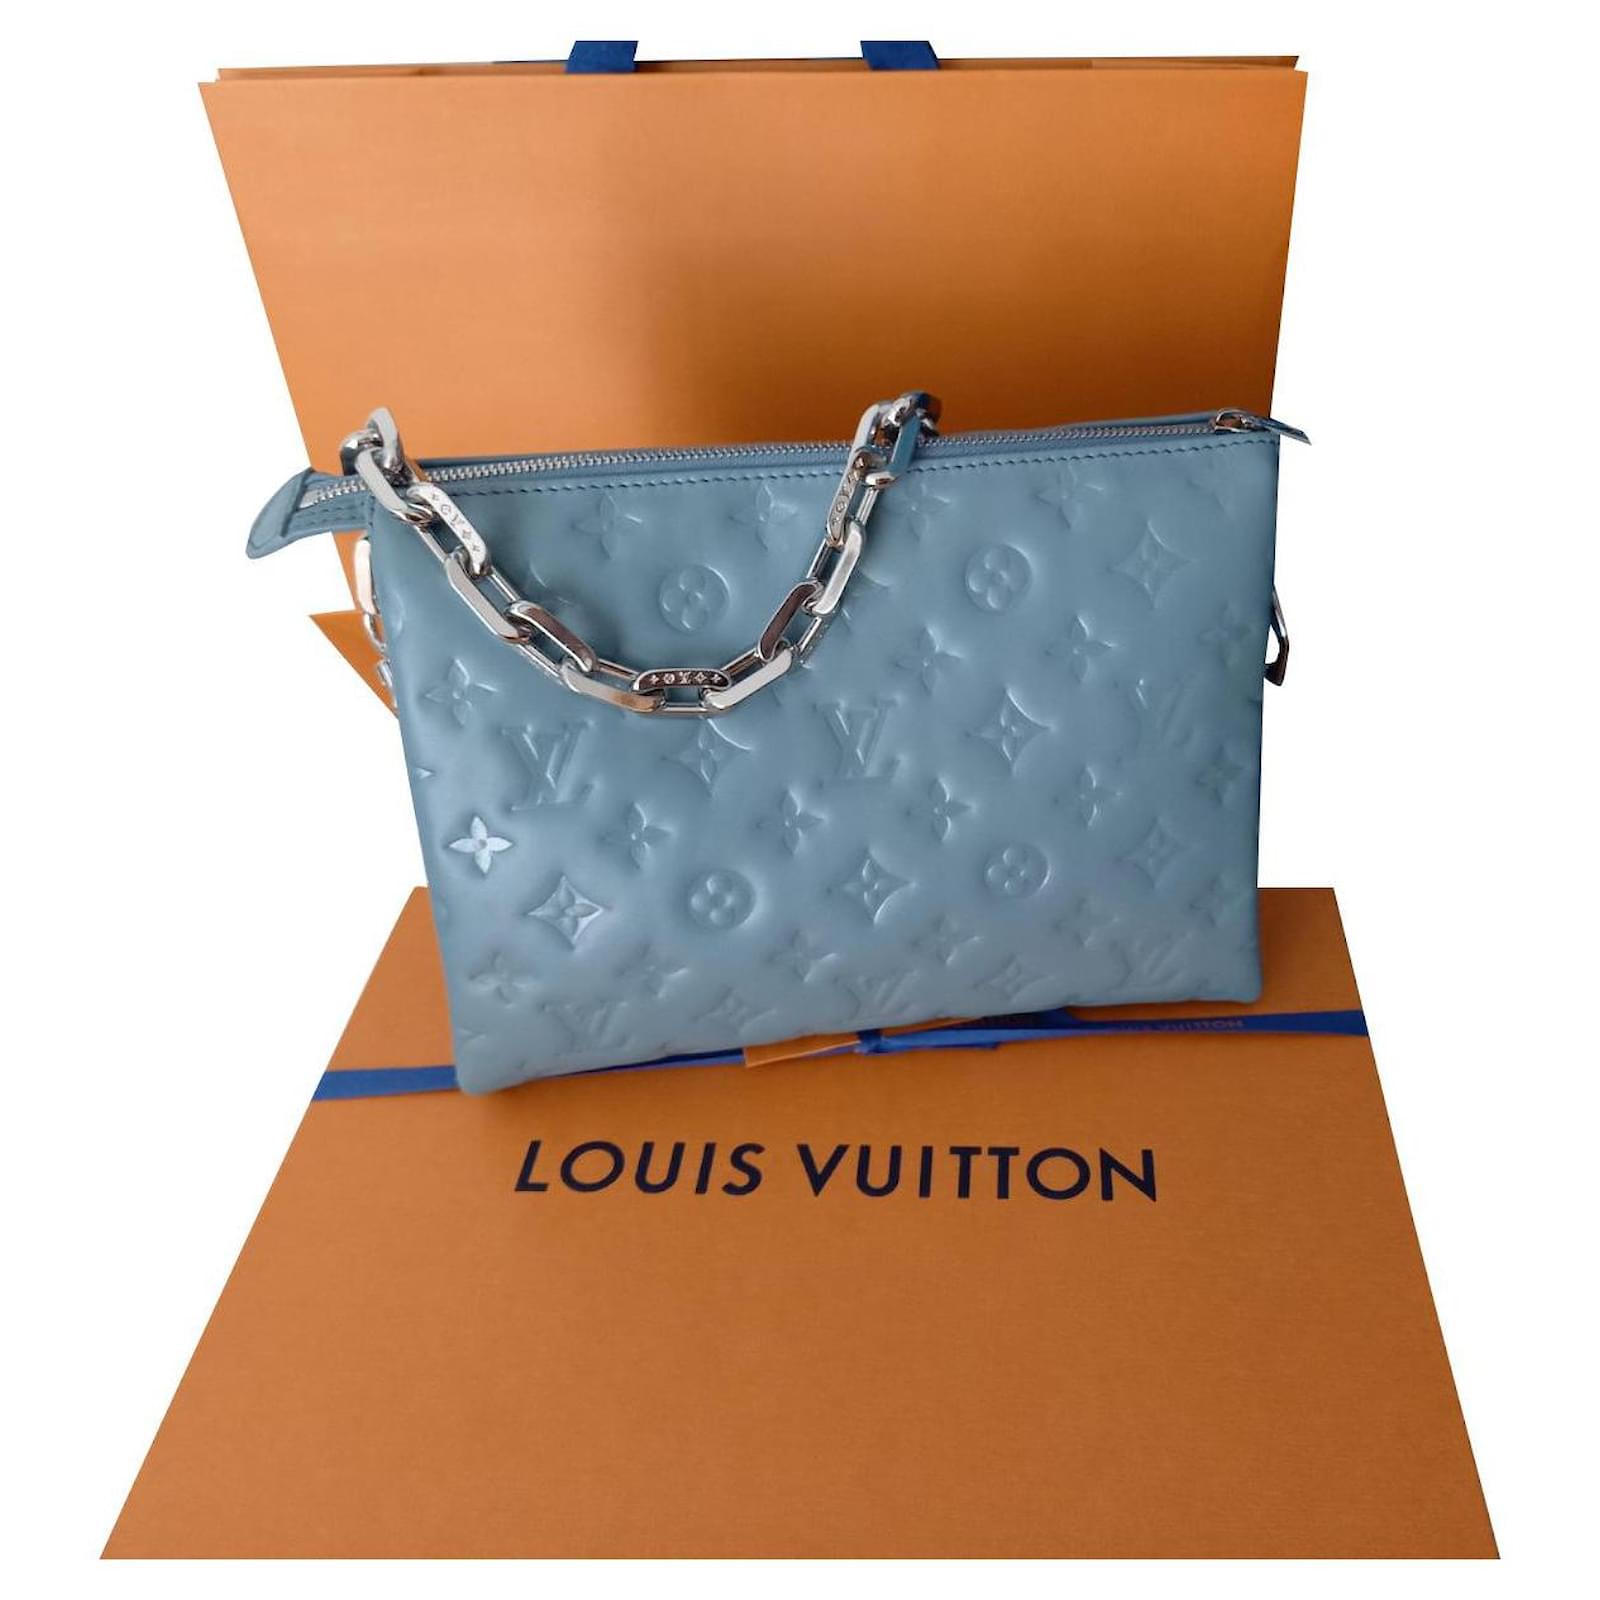 Glimpse: Louis Vuitton SAC COUSSIN PM 